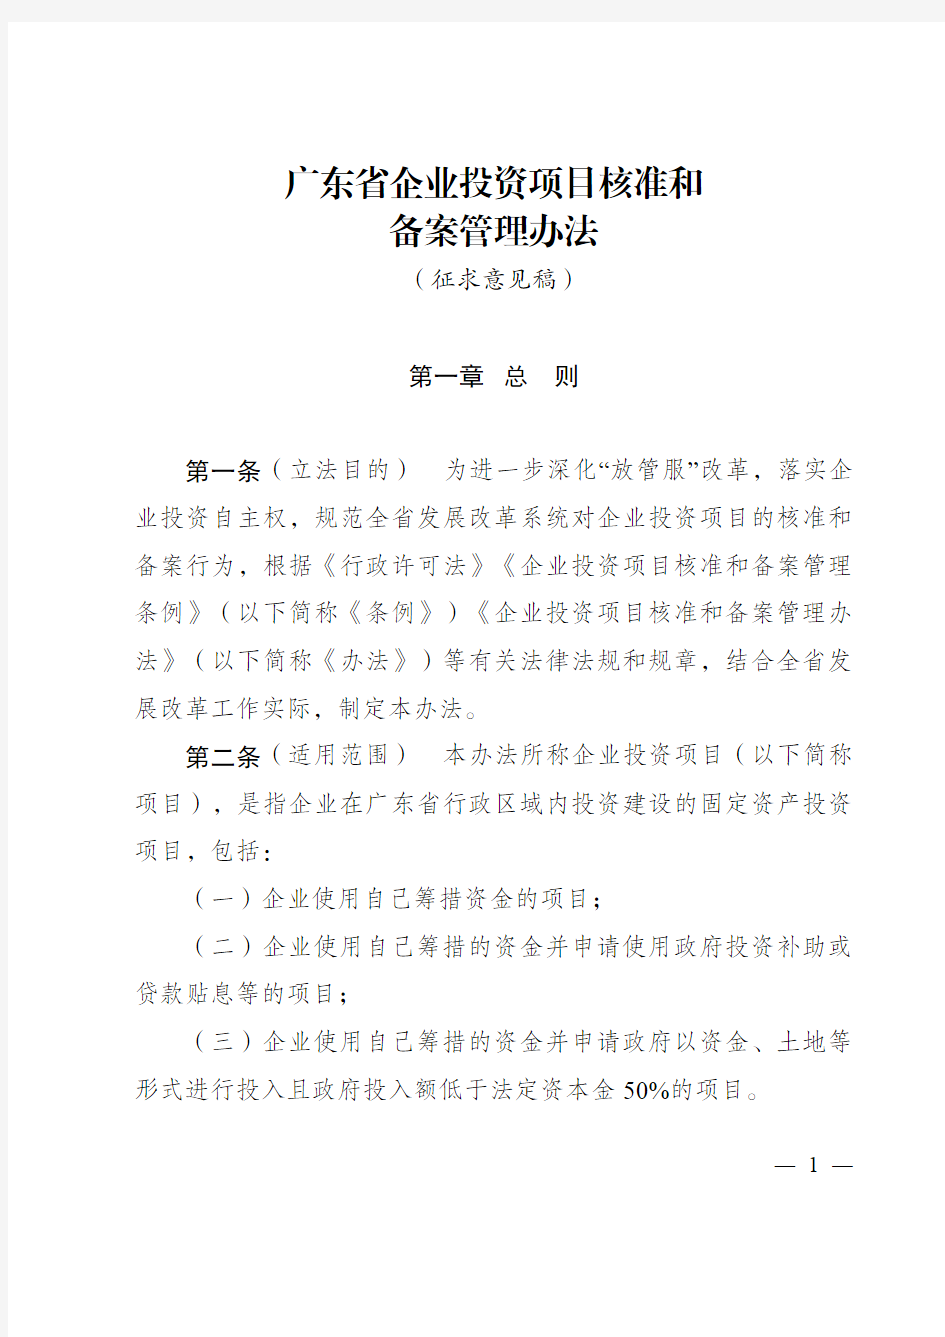 广东省企业投资项目核准和备案管理办法(征求意见稿)